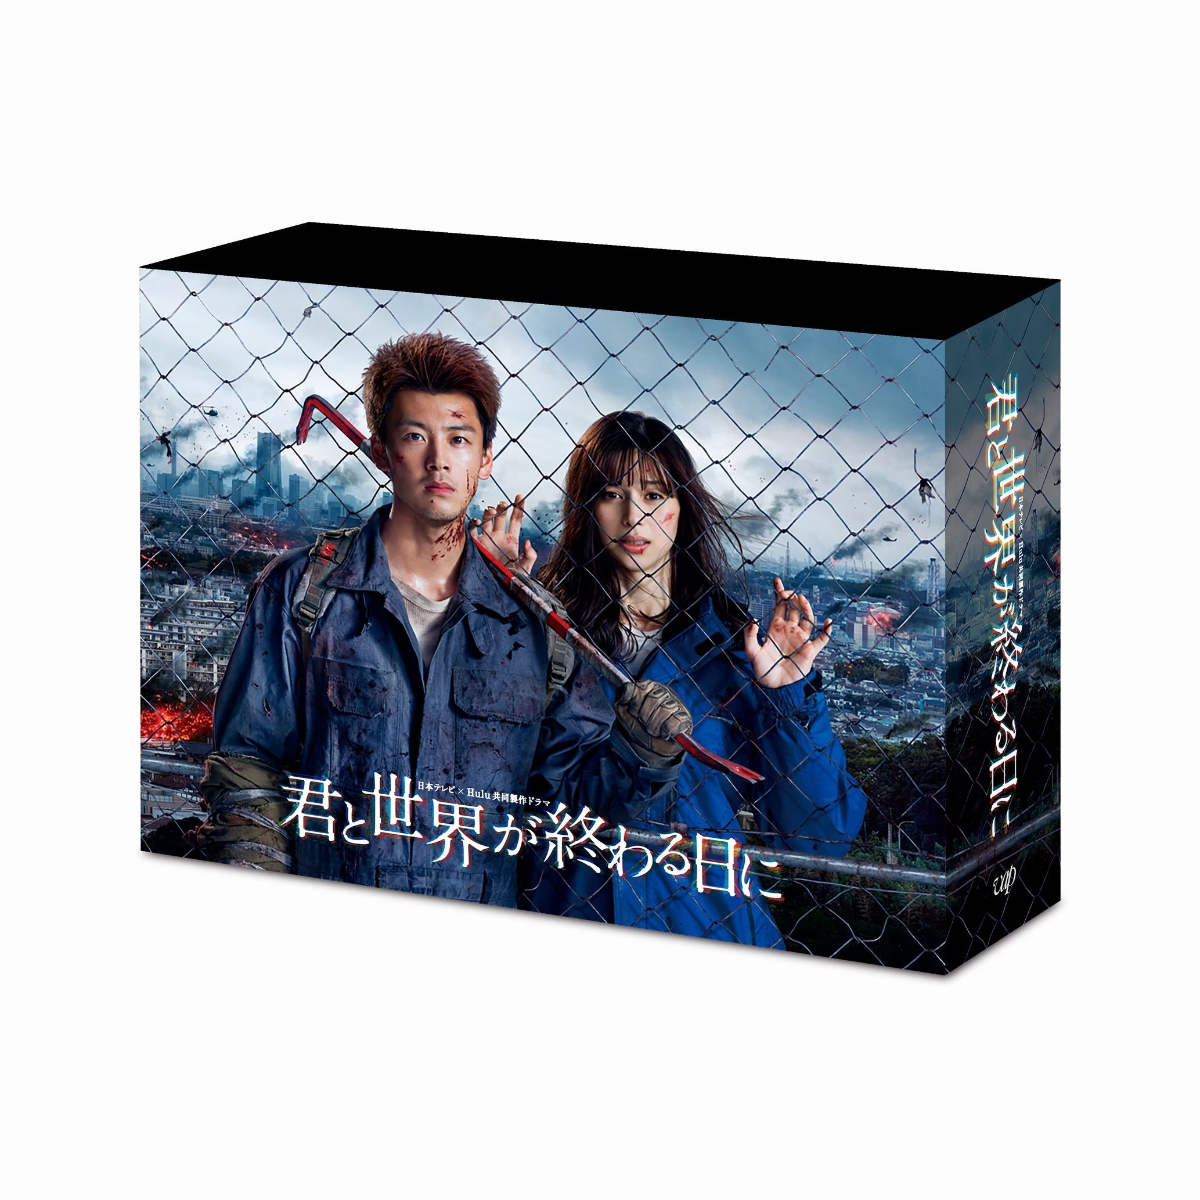 楽天ブックス: 君と世界が終わる日に Blu-ray BOX【Blu-ray】 - 竹内涼